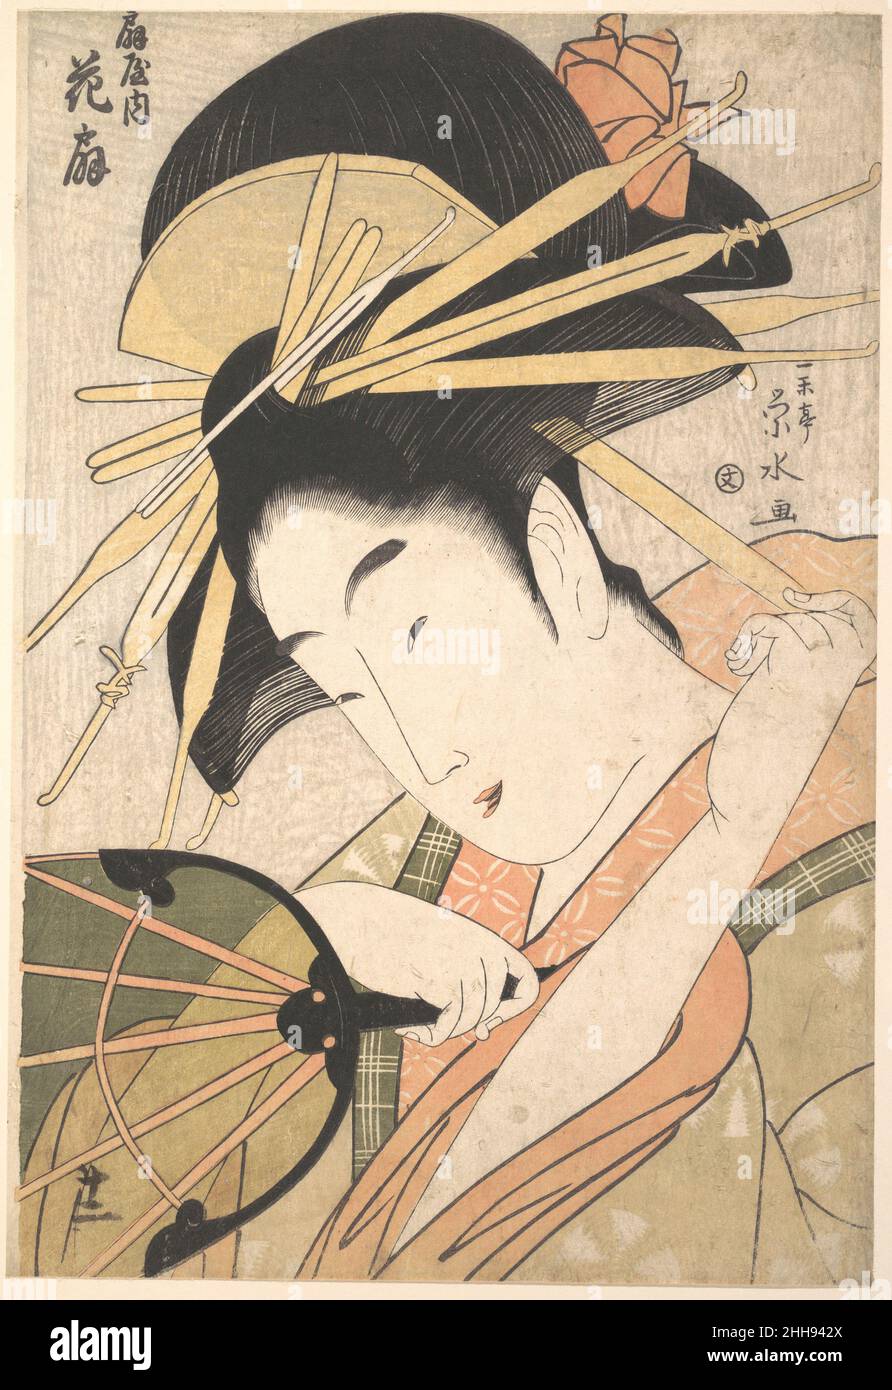 Die Kurtisane Hanaōgi des Ōgiya Bordells (Ōgiya no uchi Hanaōgi) 1790s Ichirakutei Eisui die Japanerin Hanaōgi fiddelt mit einer der Haarnadeln, die ihre prächtige Coiffure an ihrem Platz hält. Sie greift nach einem halbtransparenten kreisförmigen Fächer, der sich an den Namen ihres Bordells Ōgiya erinnert, wörtlich „Haus der Fans“. Hanaōgi war ein Name, der von einer Reihe hochrangiger Kurtisanen dieses Hauses verwendet wurde. Dieses Bild ist aller Wahrscheinlichkeit nach für Hanaōgi VI gedacht, der bekannt war, dass er ein Talent für Poesie, Gesang und andere literarische Künste hatte. Die Kurtisane Hanaōgi des Bordells Ōgiya (Ōgiya no uchi Hanaōgi) 56096 Stockfoto